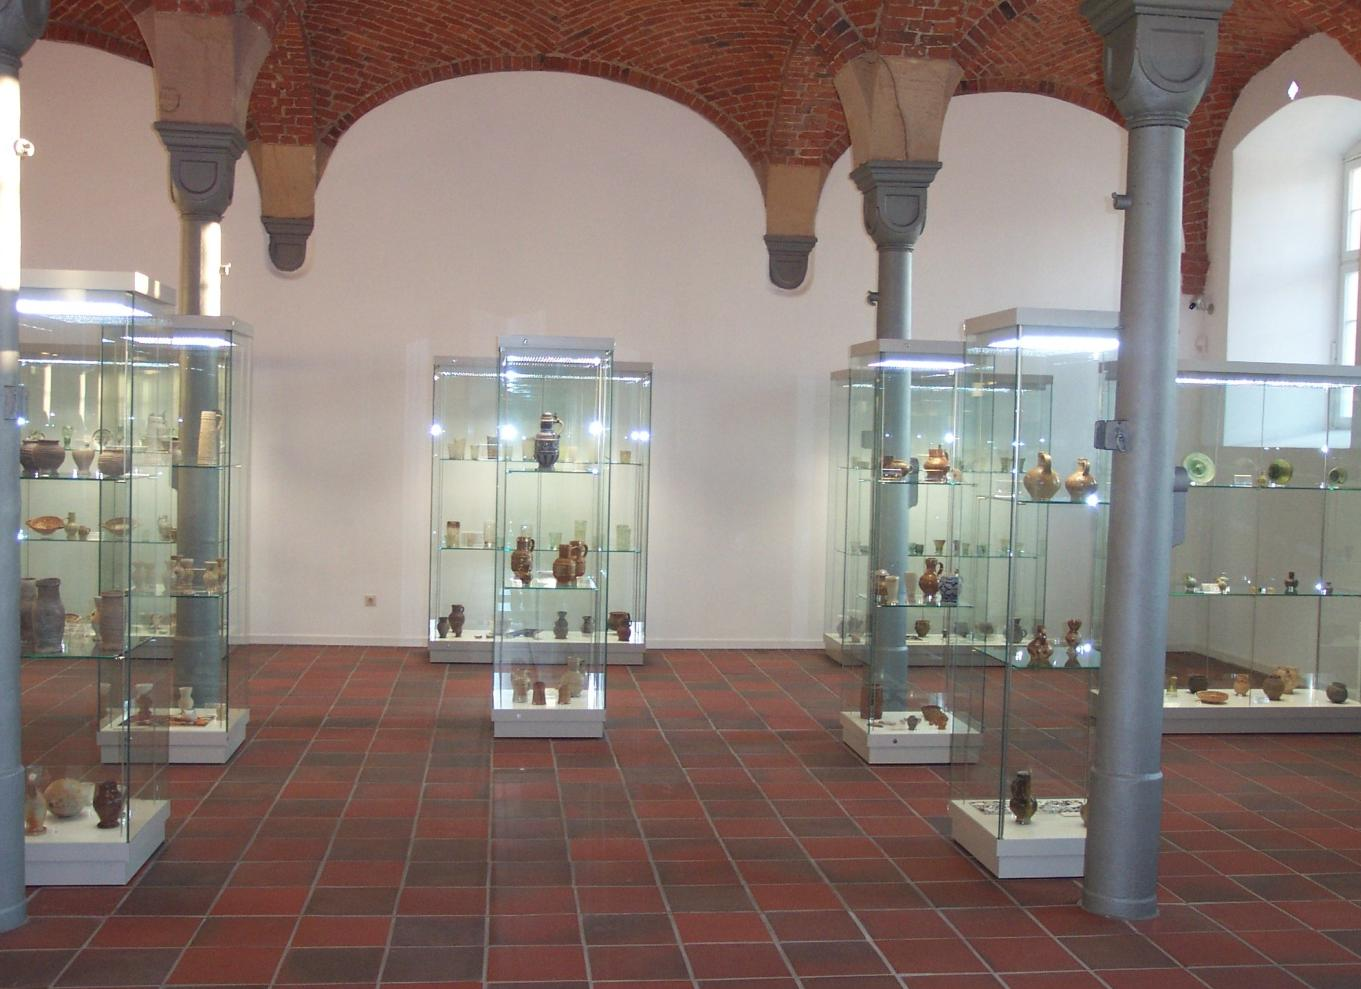 Darüber hinaus sammelte Hans-Joachim Nachtmann im Laufe von Jahrzehnten komplette Gläser und keramische Gefäße, die zum Teil zu den Fragmenten passen.